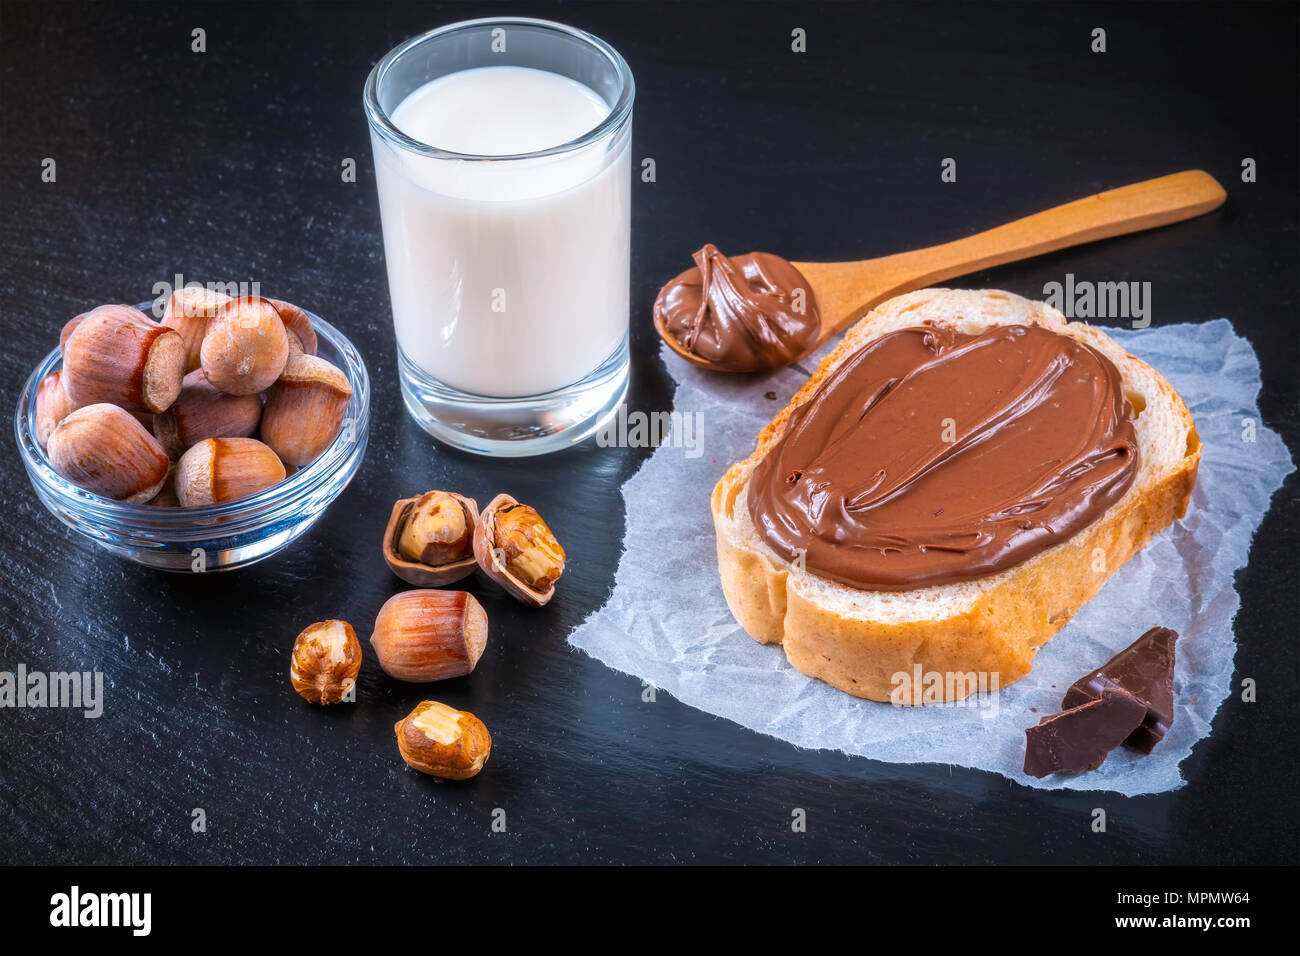 Scheibe Brot mit Schokolade und Sahne Haselnüsse auf Schwarz. Mit einem köstlichen Frühstück. Fokus auf die Haselnuss in der Schüssel. Stockfoto